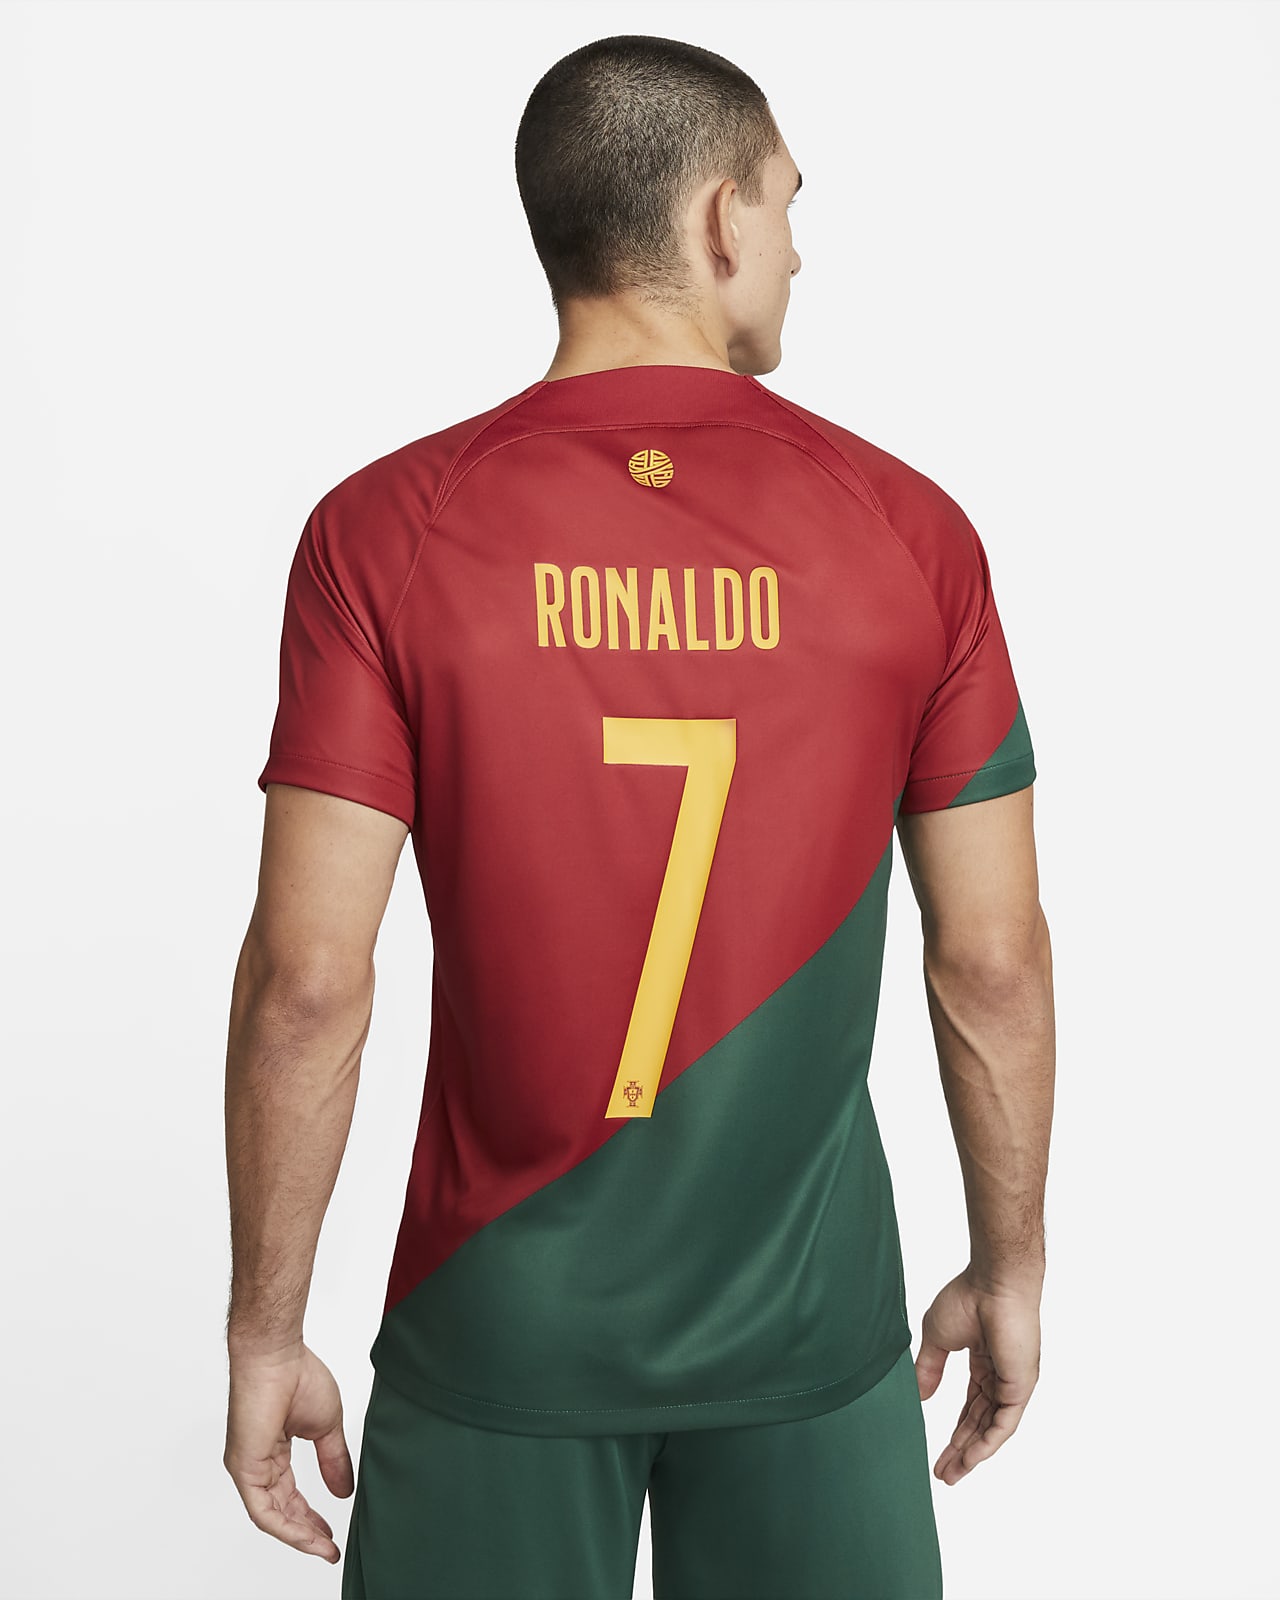 cristiano ronaldo football jersey